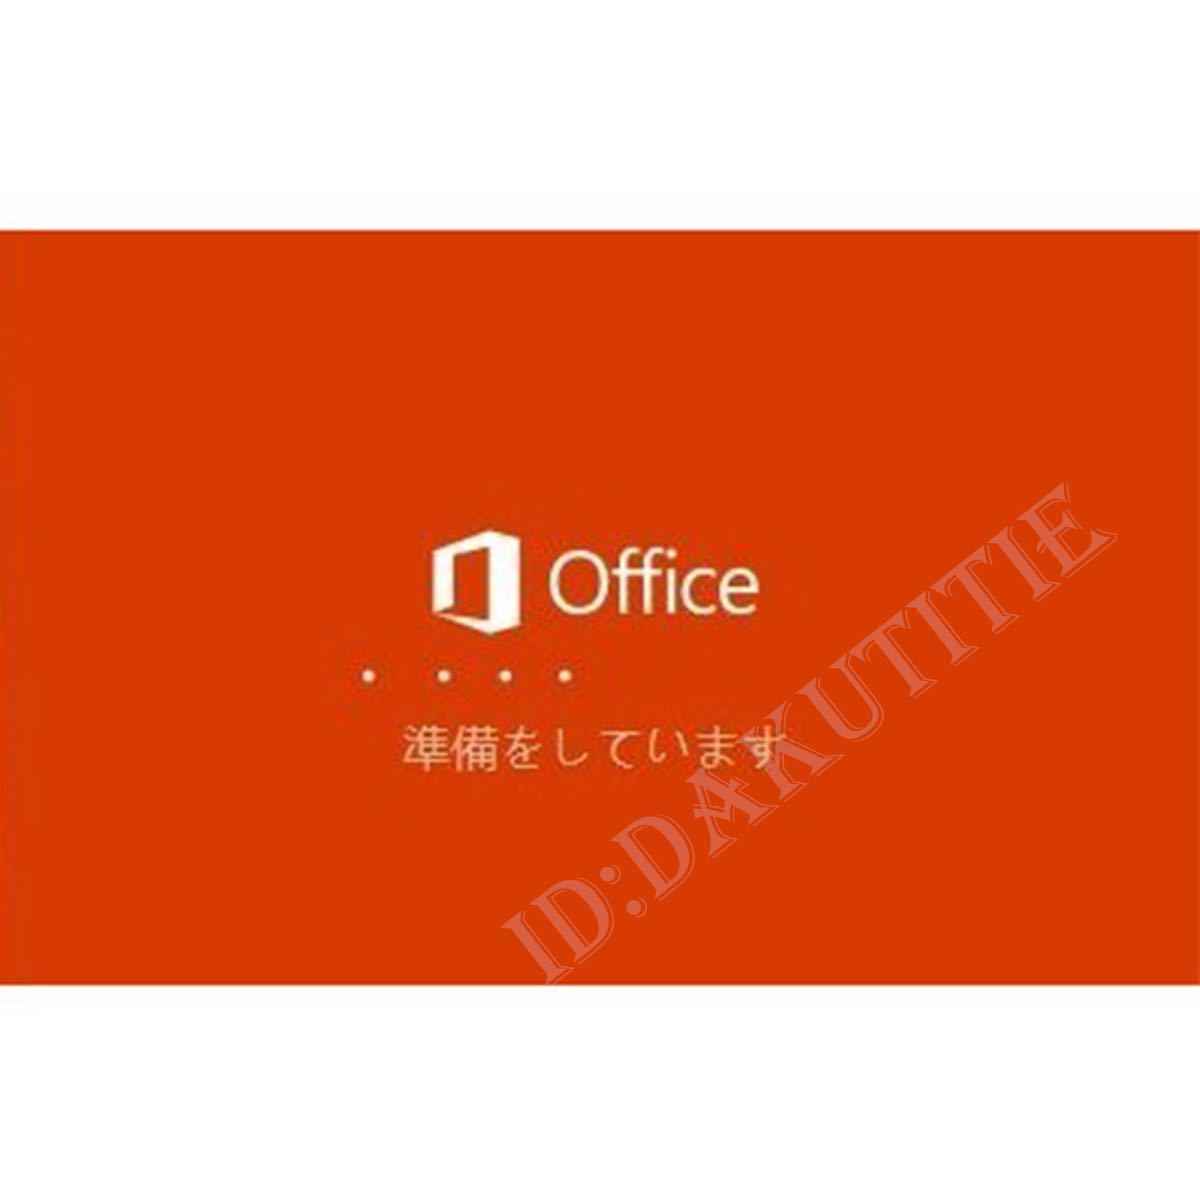 【認証保証 】Microsoft Office 2021 Professional Plus オフィス2021 プロダクトキー 正規 Word Excel 日本語版 手順書ありmの画像2